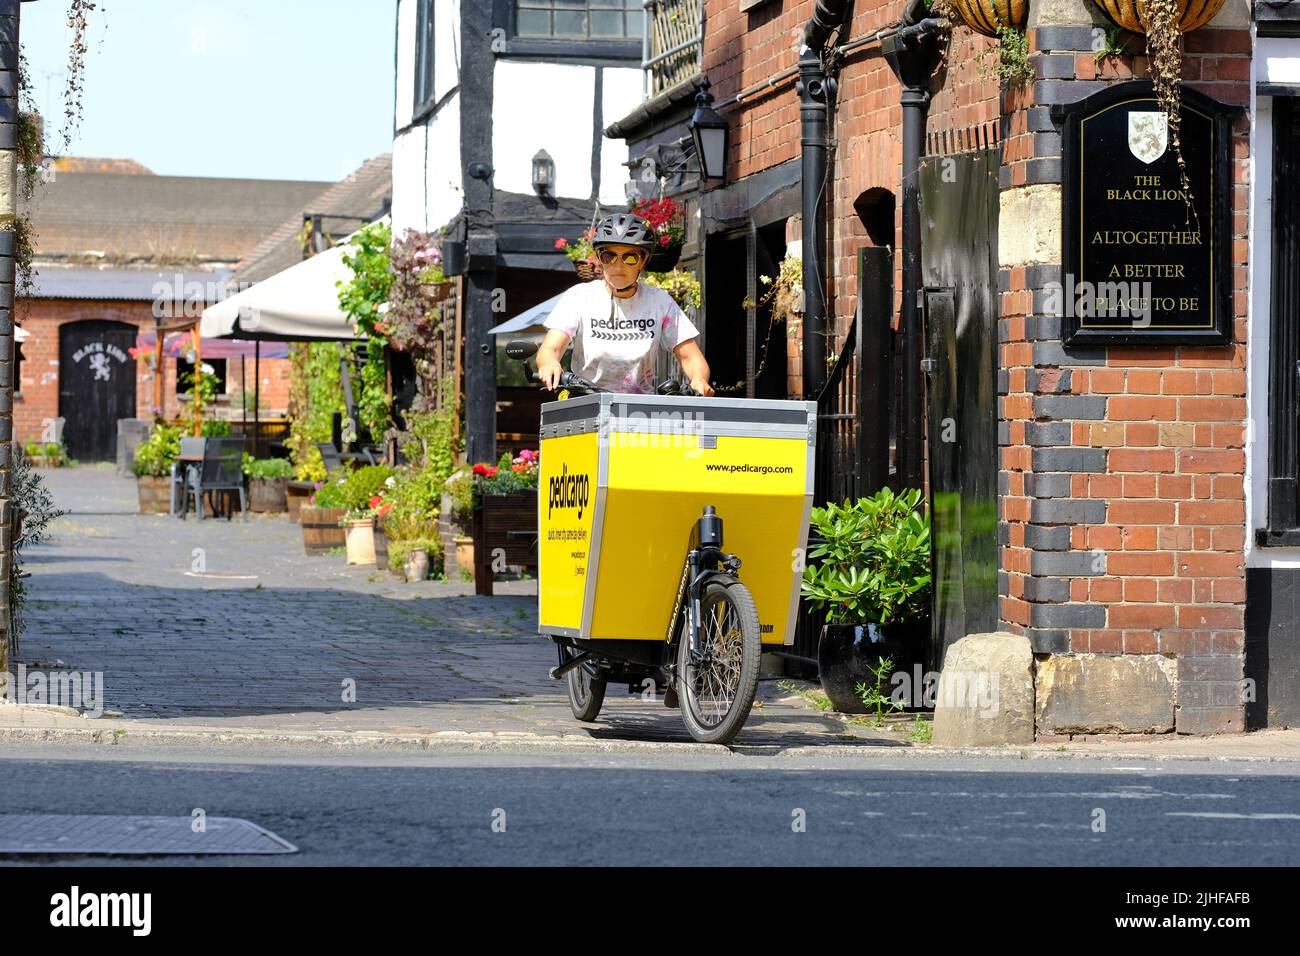 Pedicargo utilizza una flotta di biciclette da carico in tutto il Regno Unito per le consegne alle aziende locali e per la raccolta dei rifiuti Foto Stock